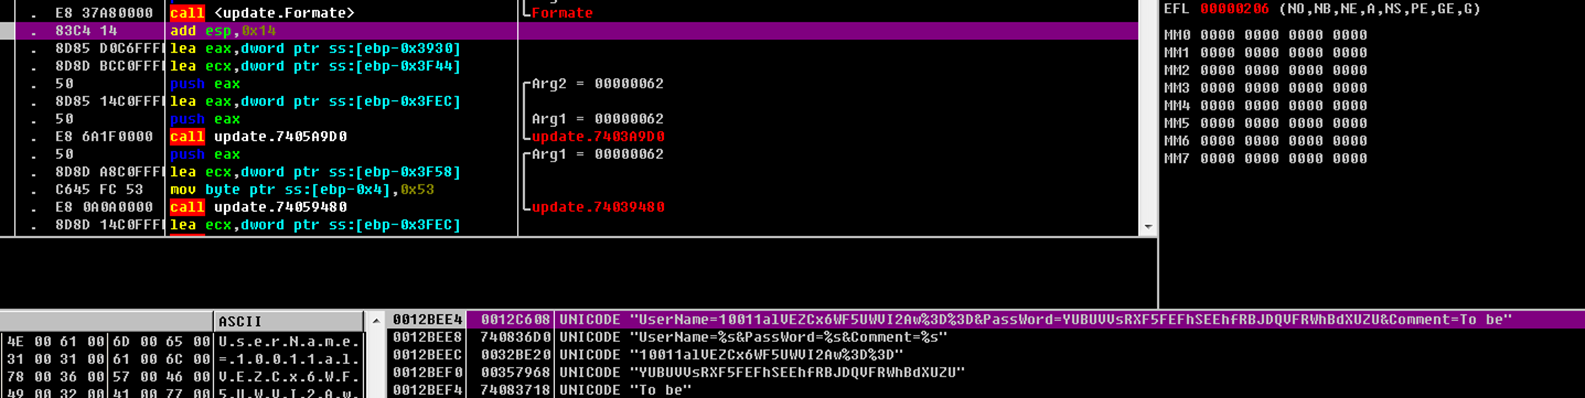 蓝宝菇(APT-C-12)最新攻击样本及C&C机制分析-第21张图片-网盾网络安全培训